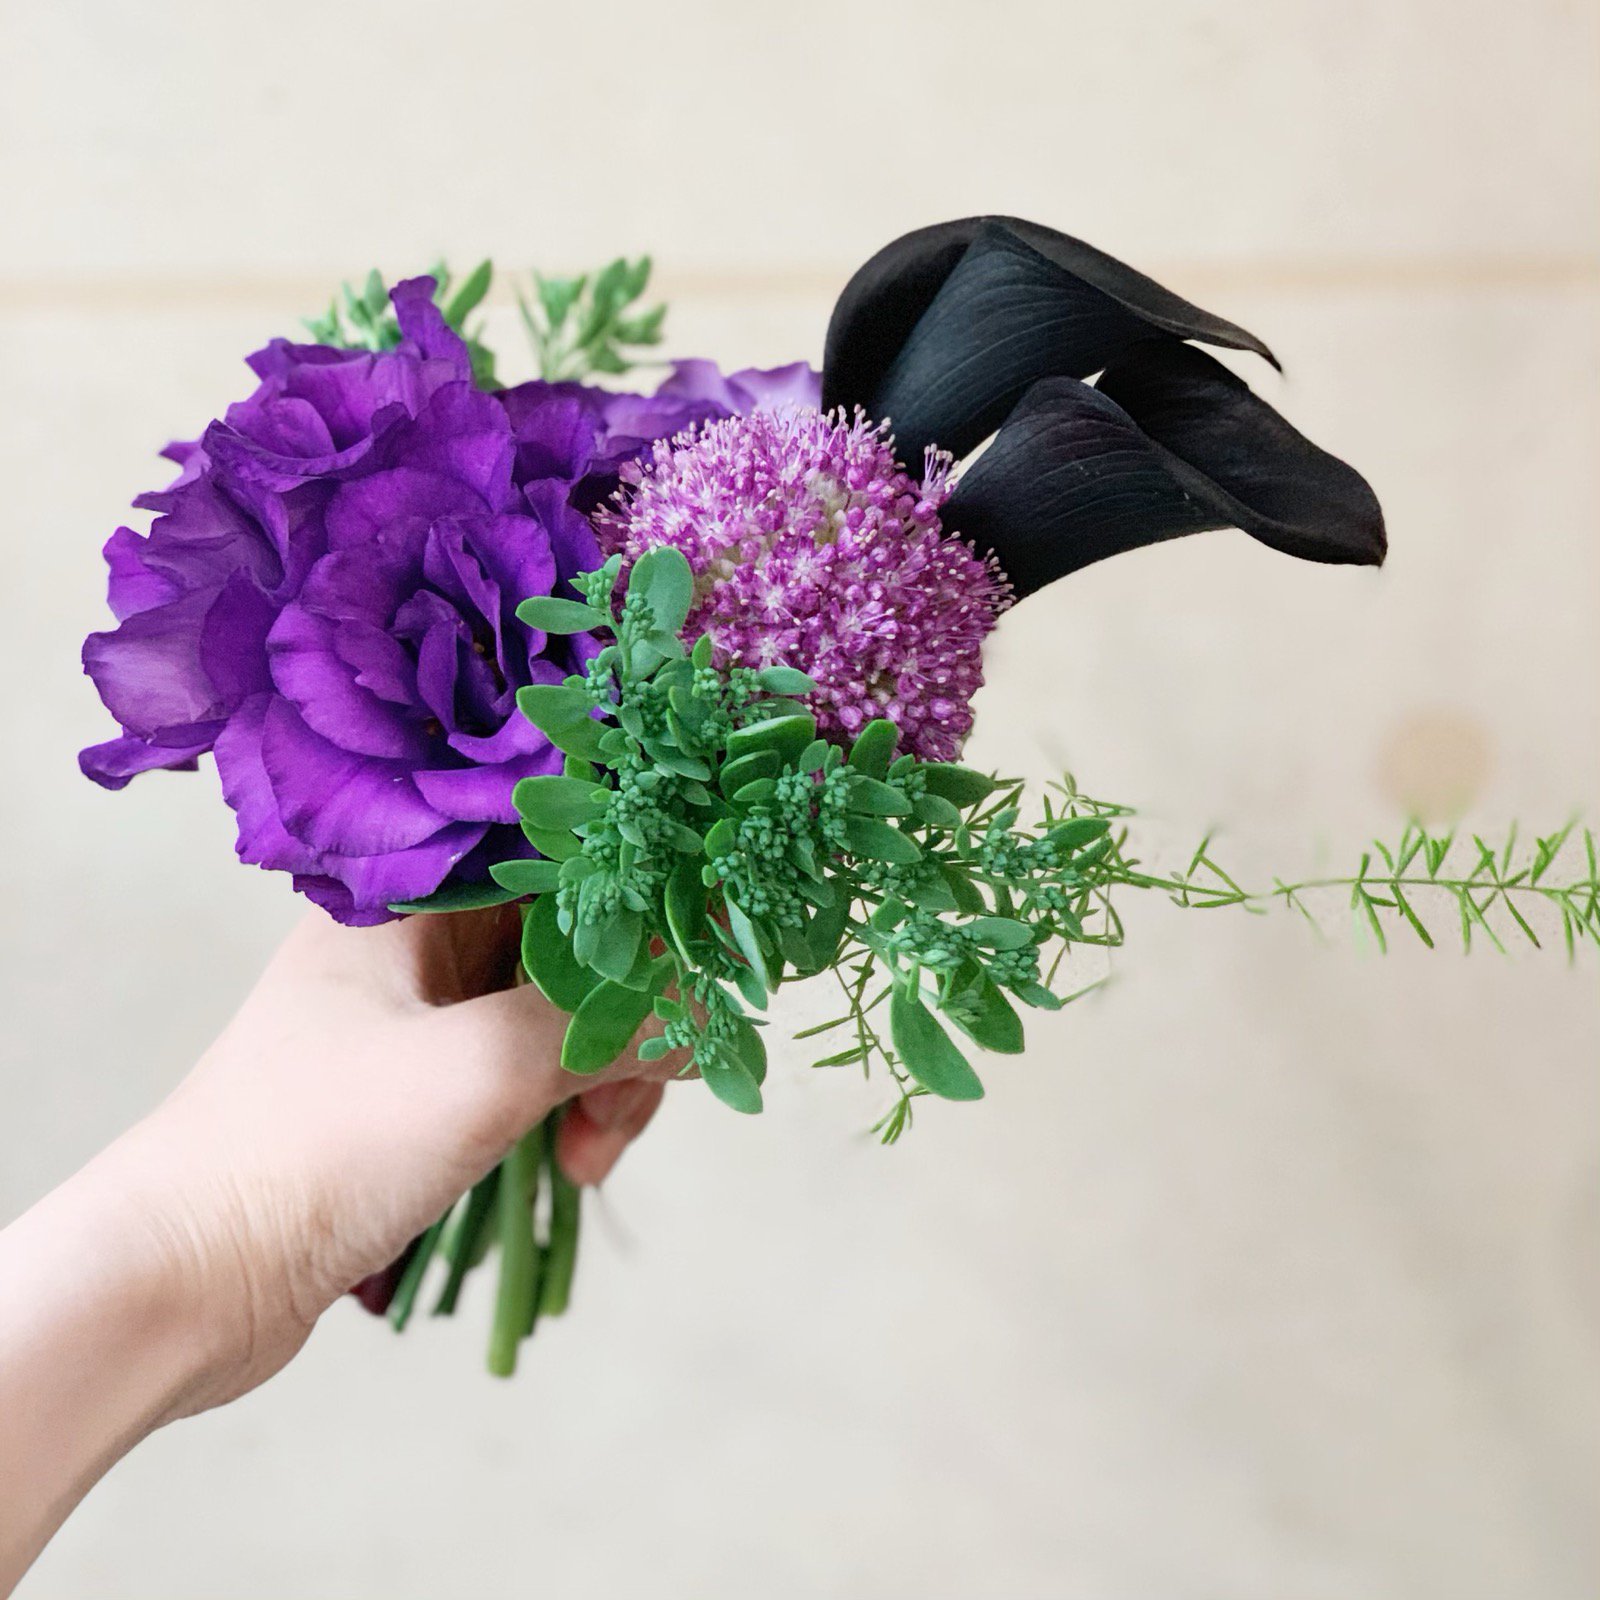 いろは花店 とてもきれいなカラーの切り花を入荷いたしました 黒のカラーもあり とってもおしゃれです 滋賀県 守山市 滋賀の花屋さん 花 カラー 入荷 花屋 T Co 7wlua2yk3v Twitter